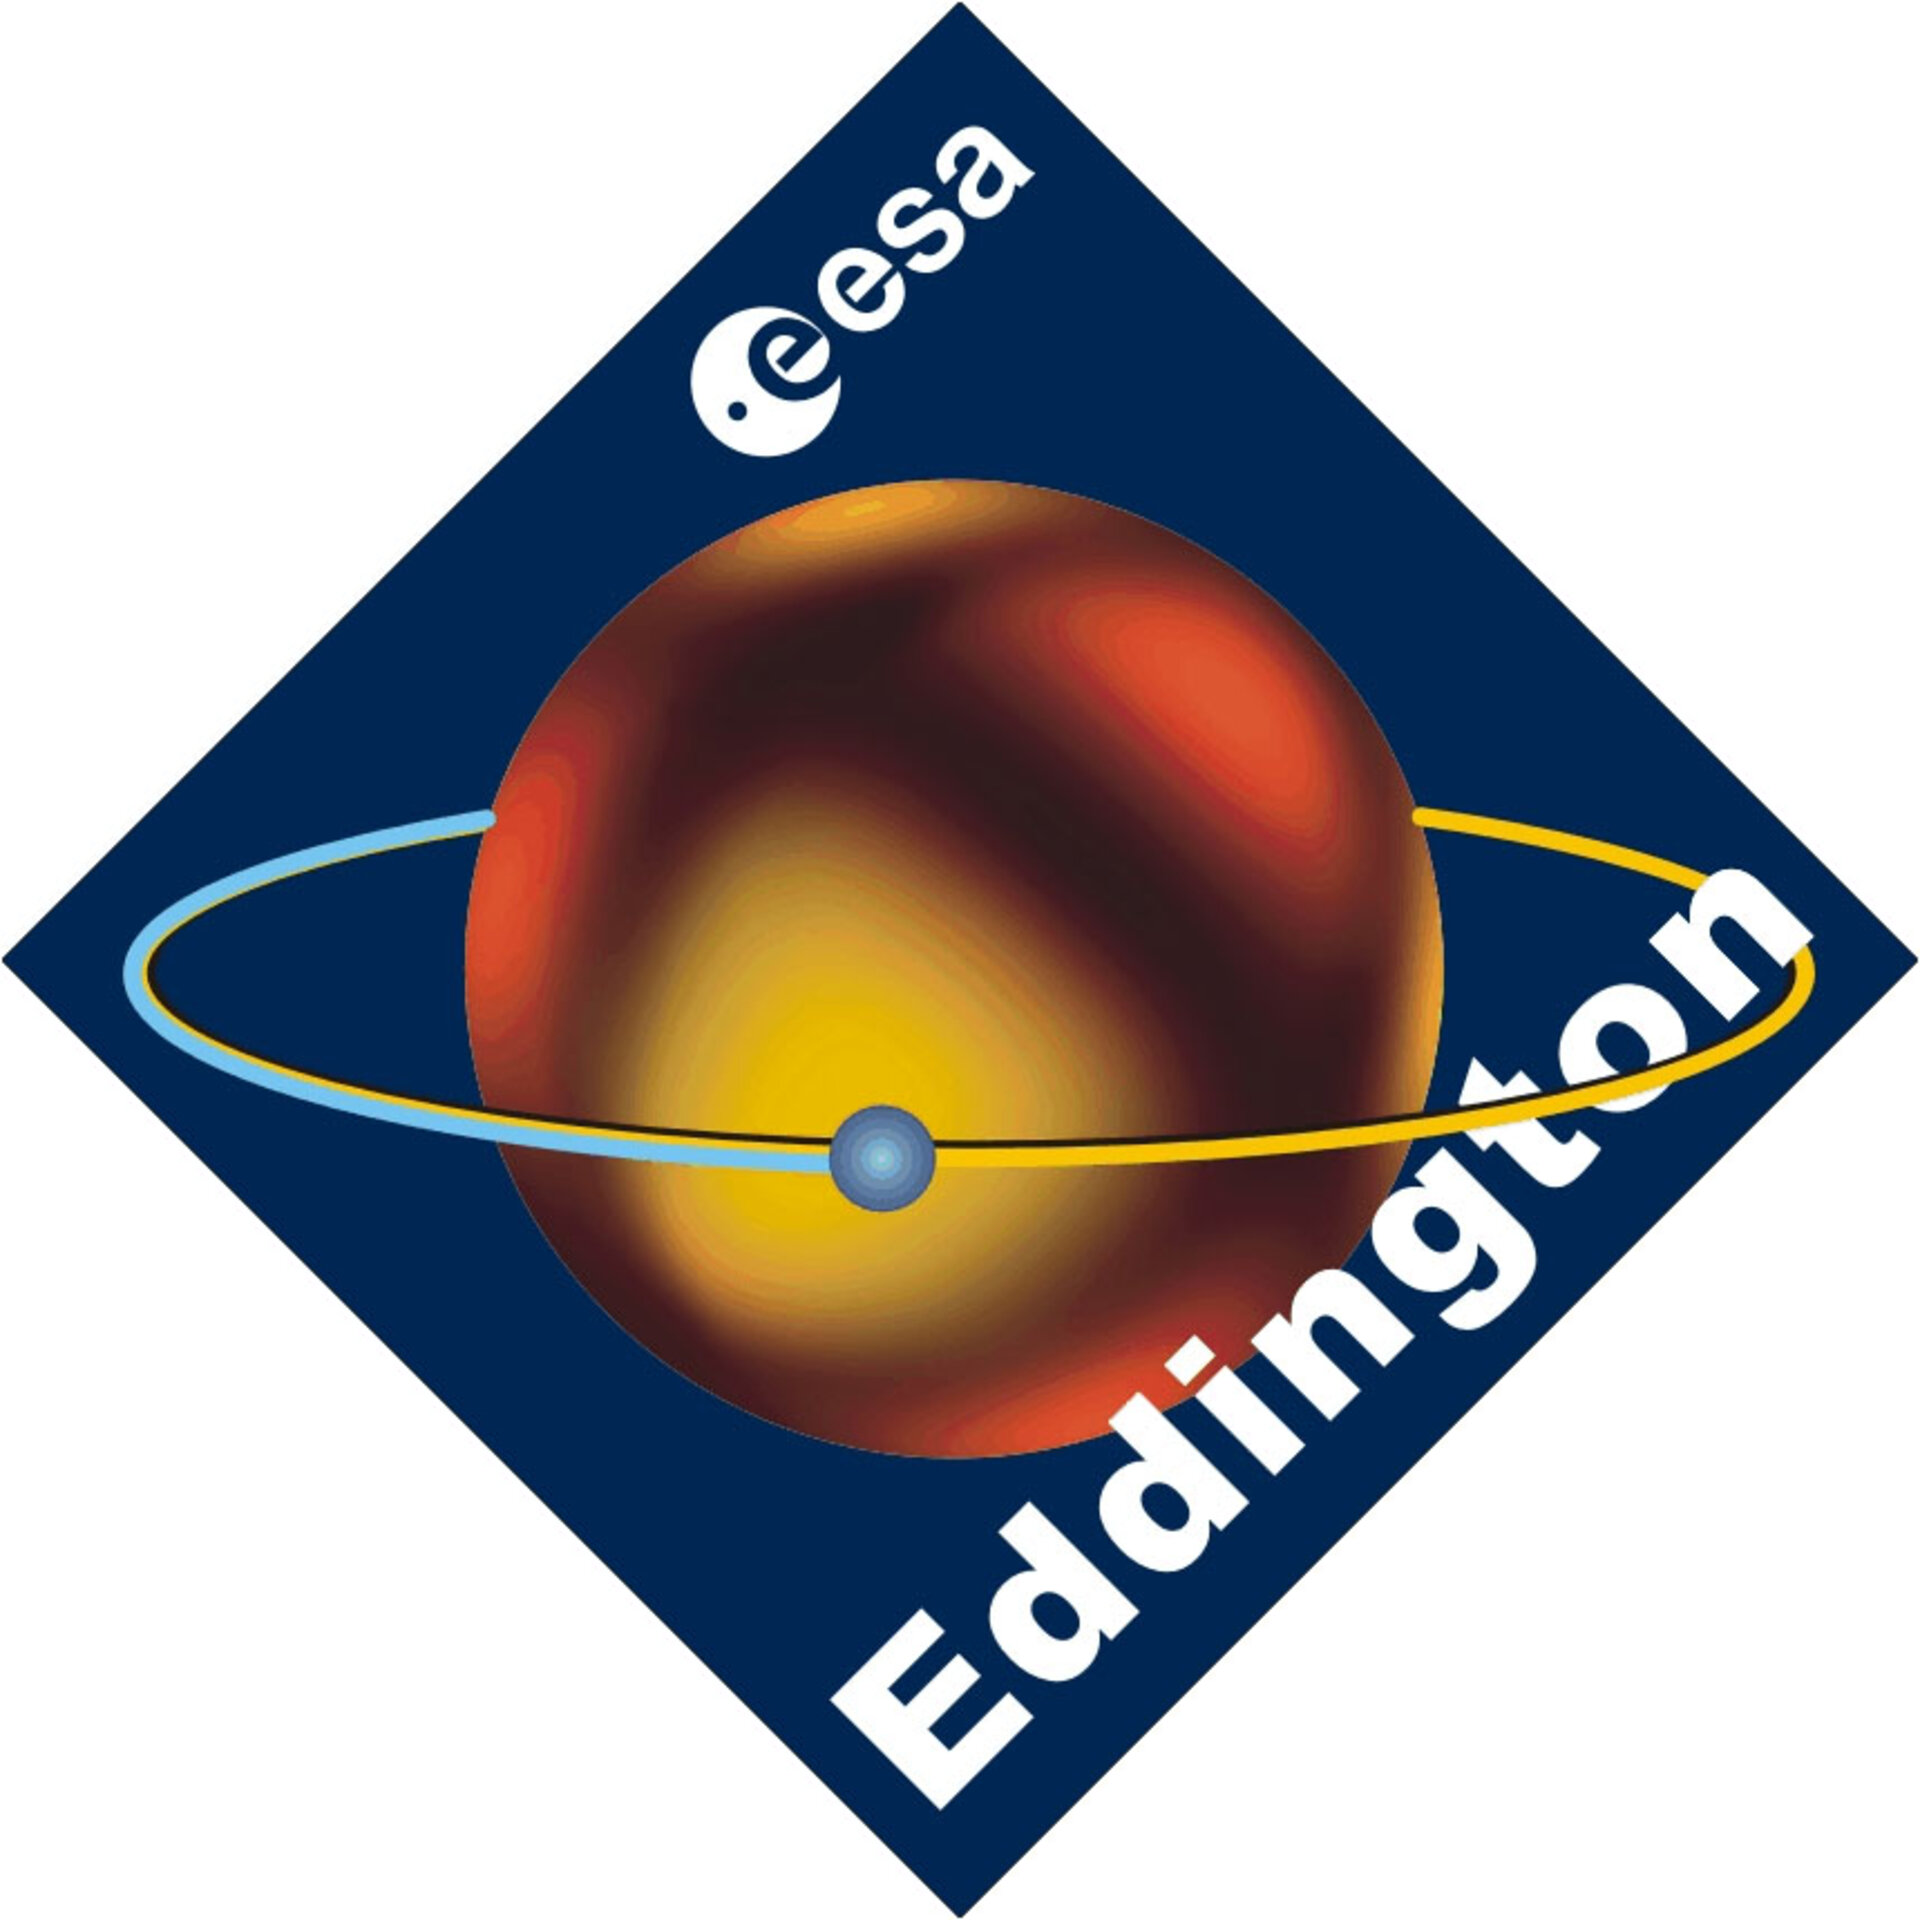 ESA - Eddington logo